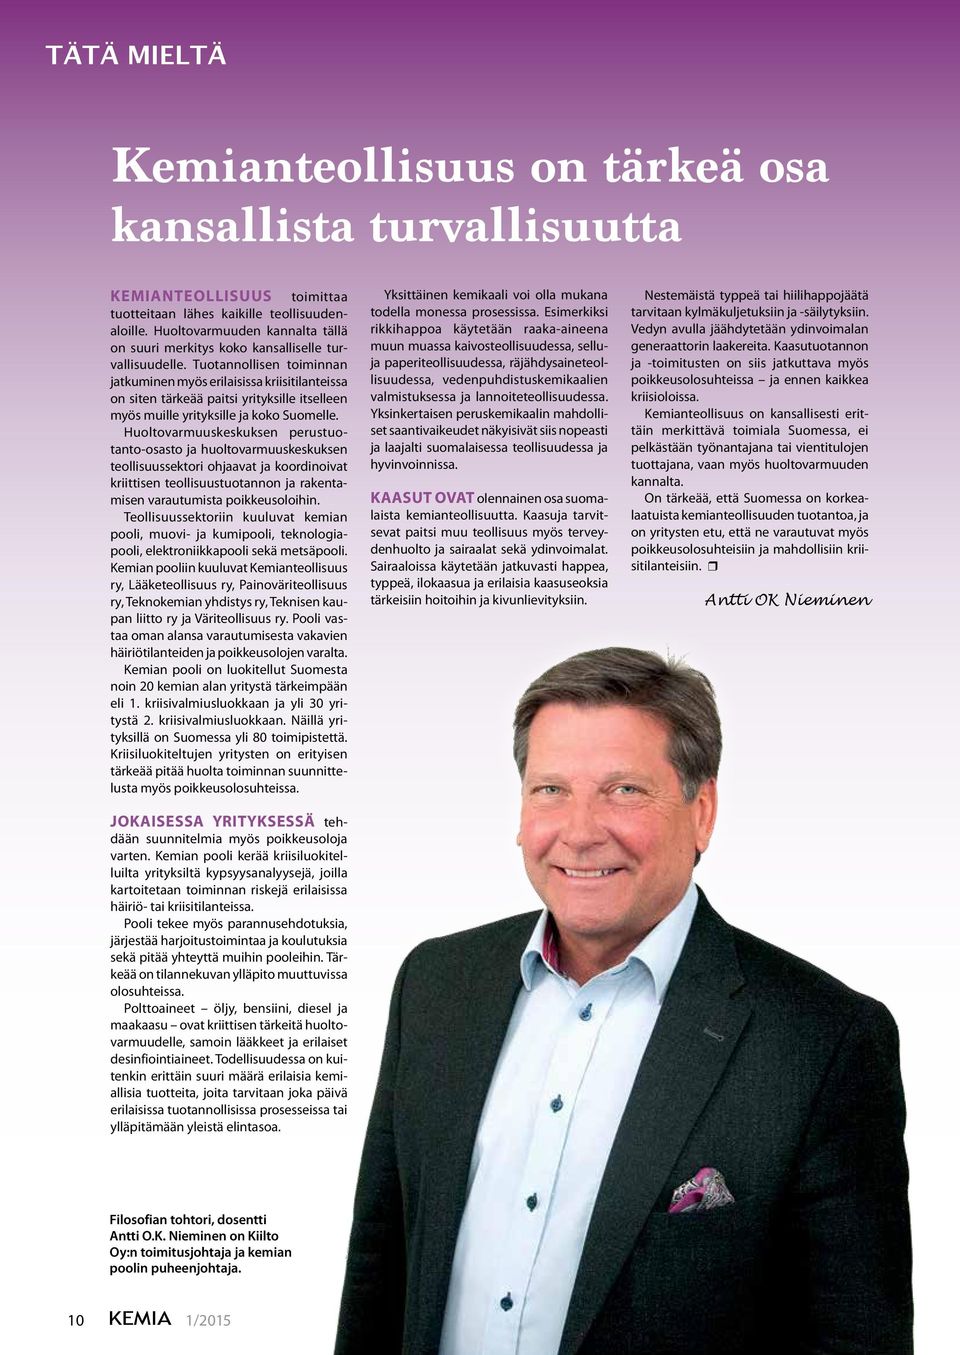 Tuotannollisen toiminnan jatkuminen myös erilaisissa kriisitilanteissa on siten tärkeää paitsi yrityksille itselleen myös muille yrityksille ja koko Suomelle.